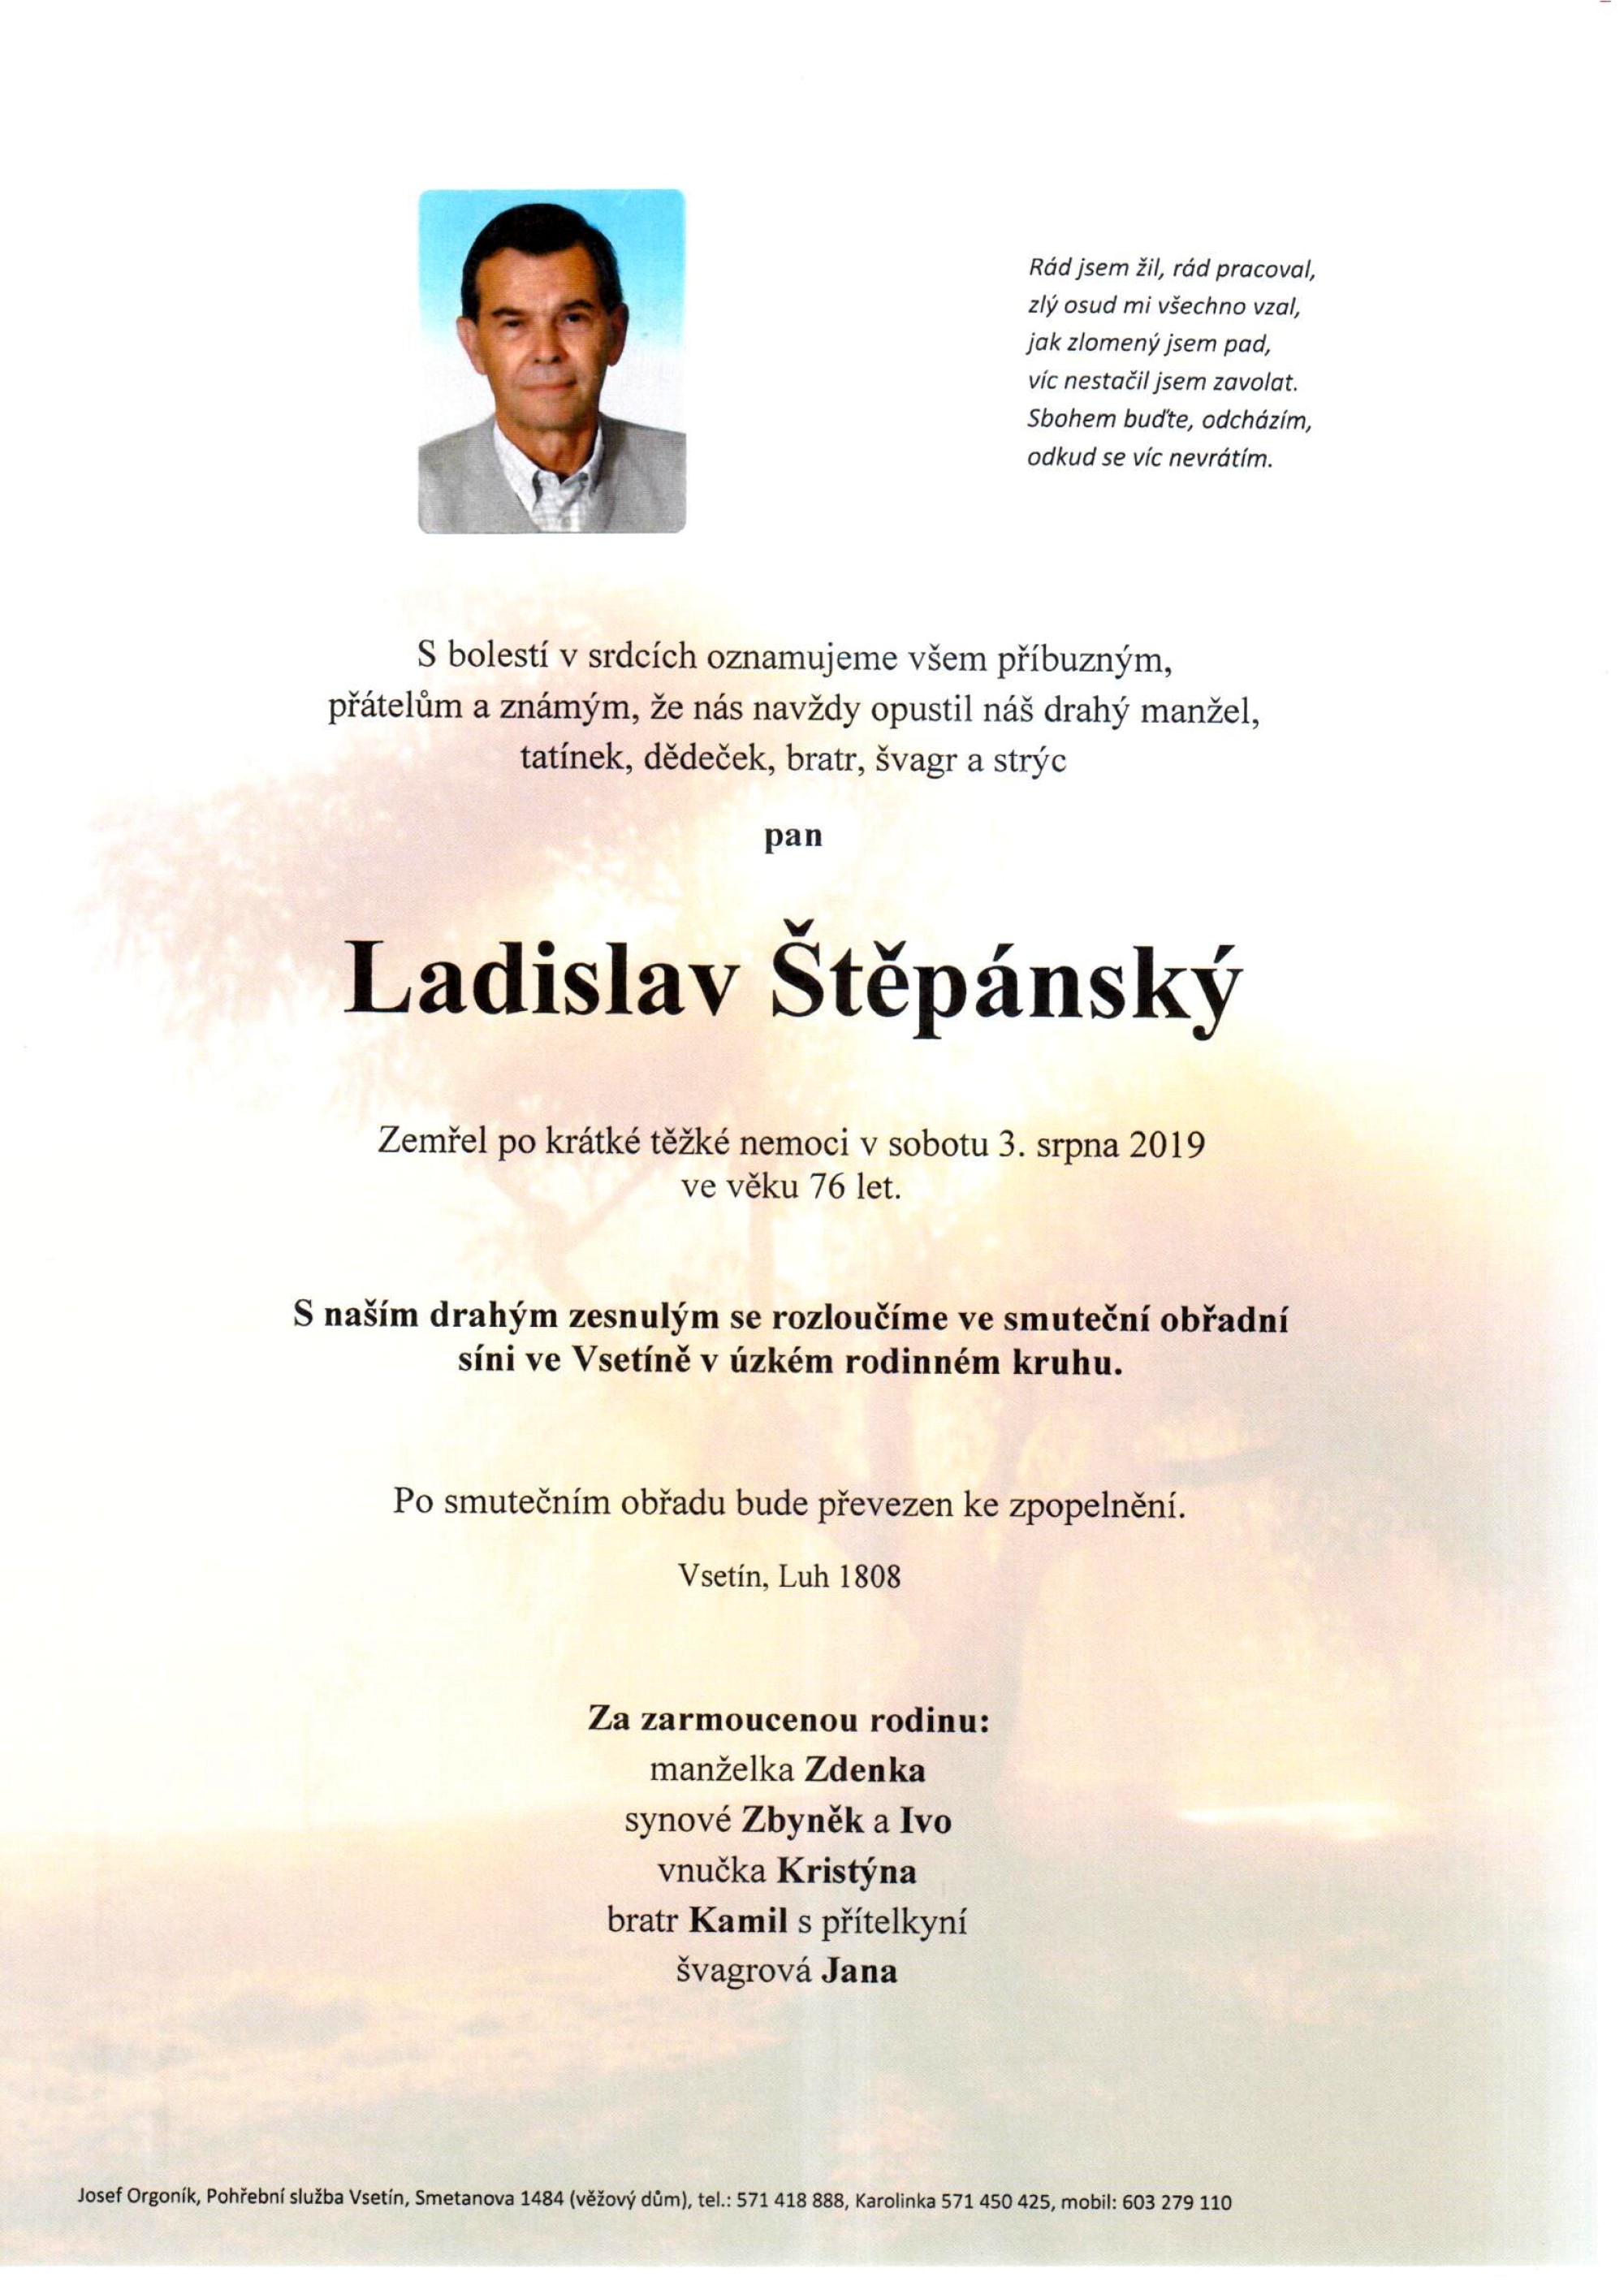 Ladislav Štěpánský